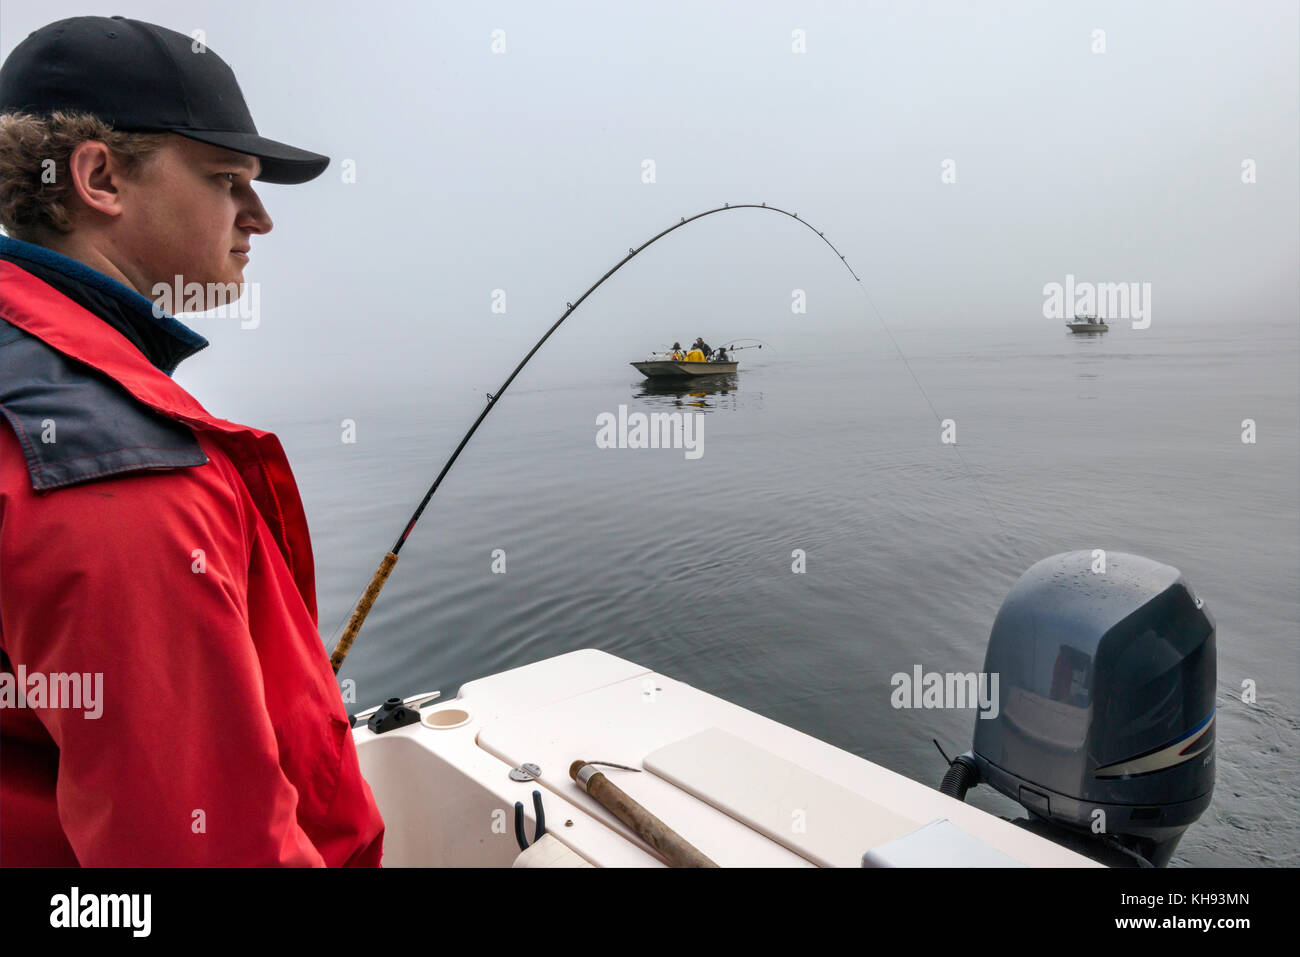 Jeune adulte en veste rouge avec tringle de pêche en bateau, passant d'autres bateaux, matin brouillard dans le détroit de Johnstone au large de l'île de Vancouver, Colombie-Britannique, Can Banque D'Images